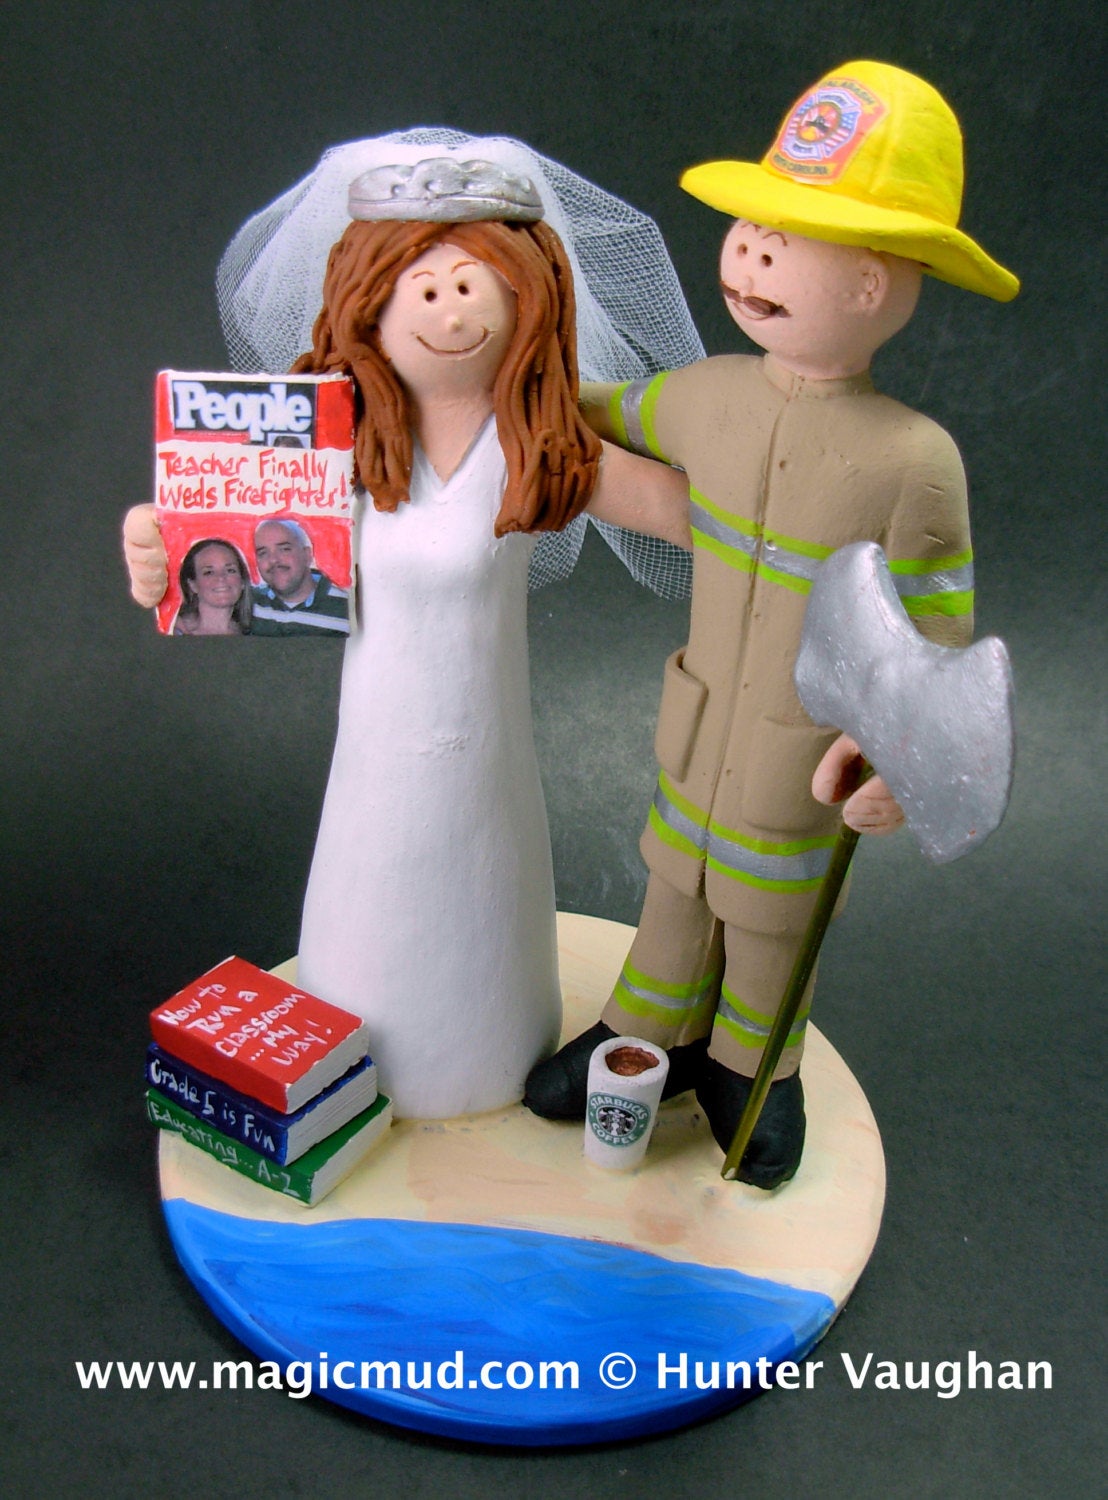 FireFighter Groom Marries Teacher Bride Wedding Cake Topper, Fireman Wedding Cake Topper, Fire Fighters Wedding CakeTopper, Fireman Figurine - iWeddingCakeToppers